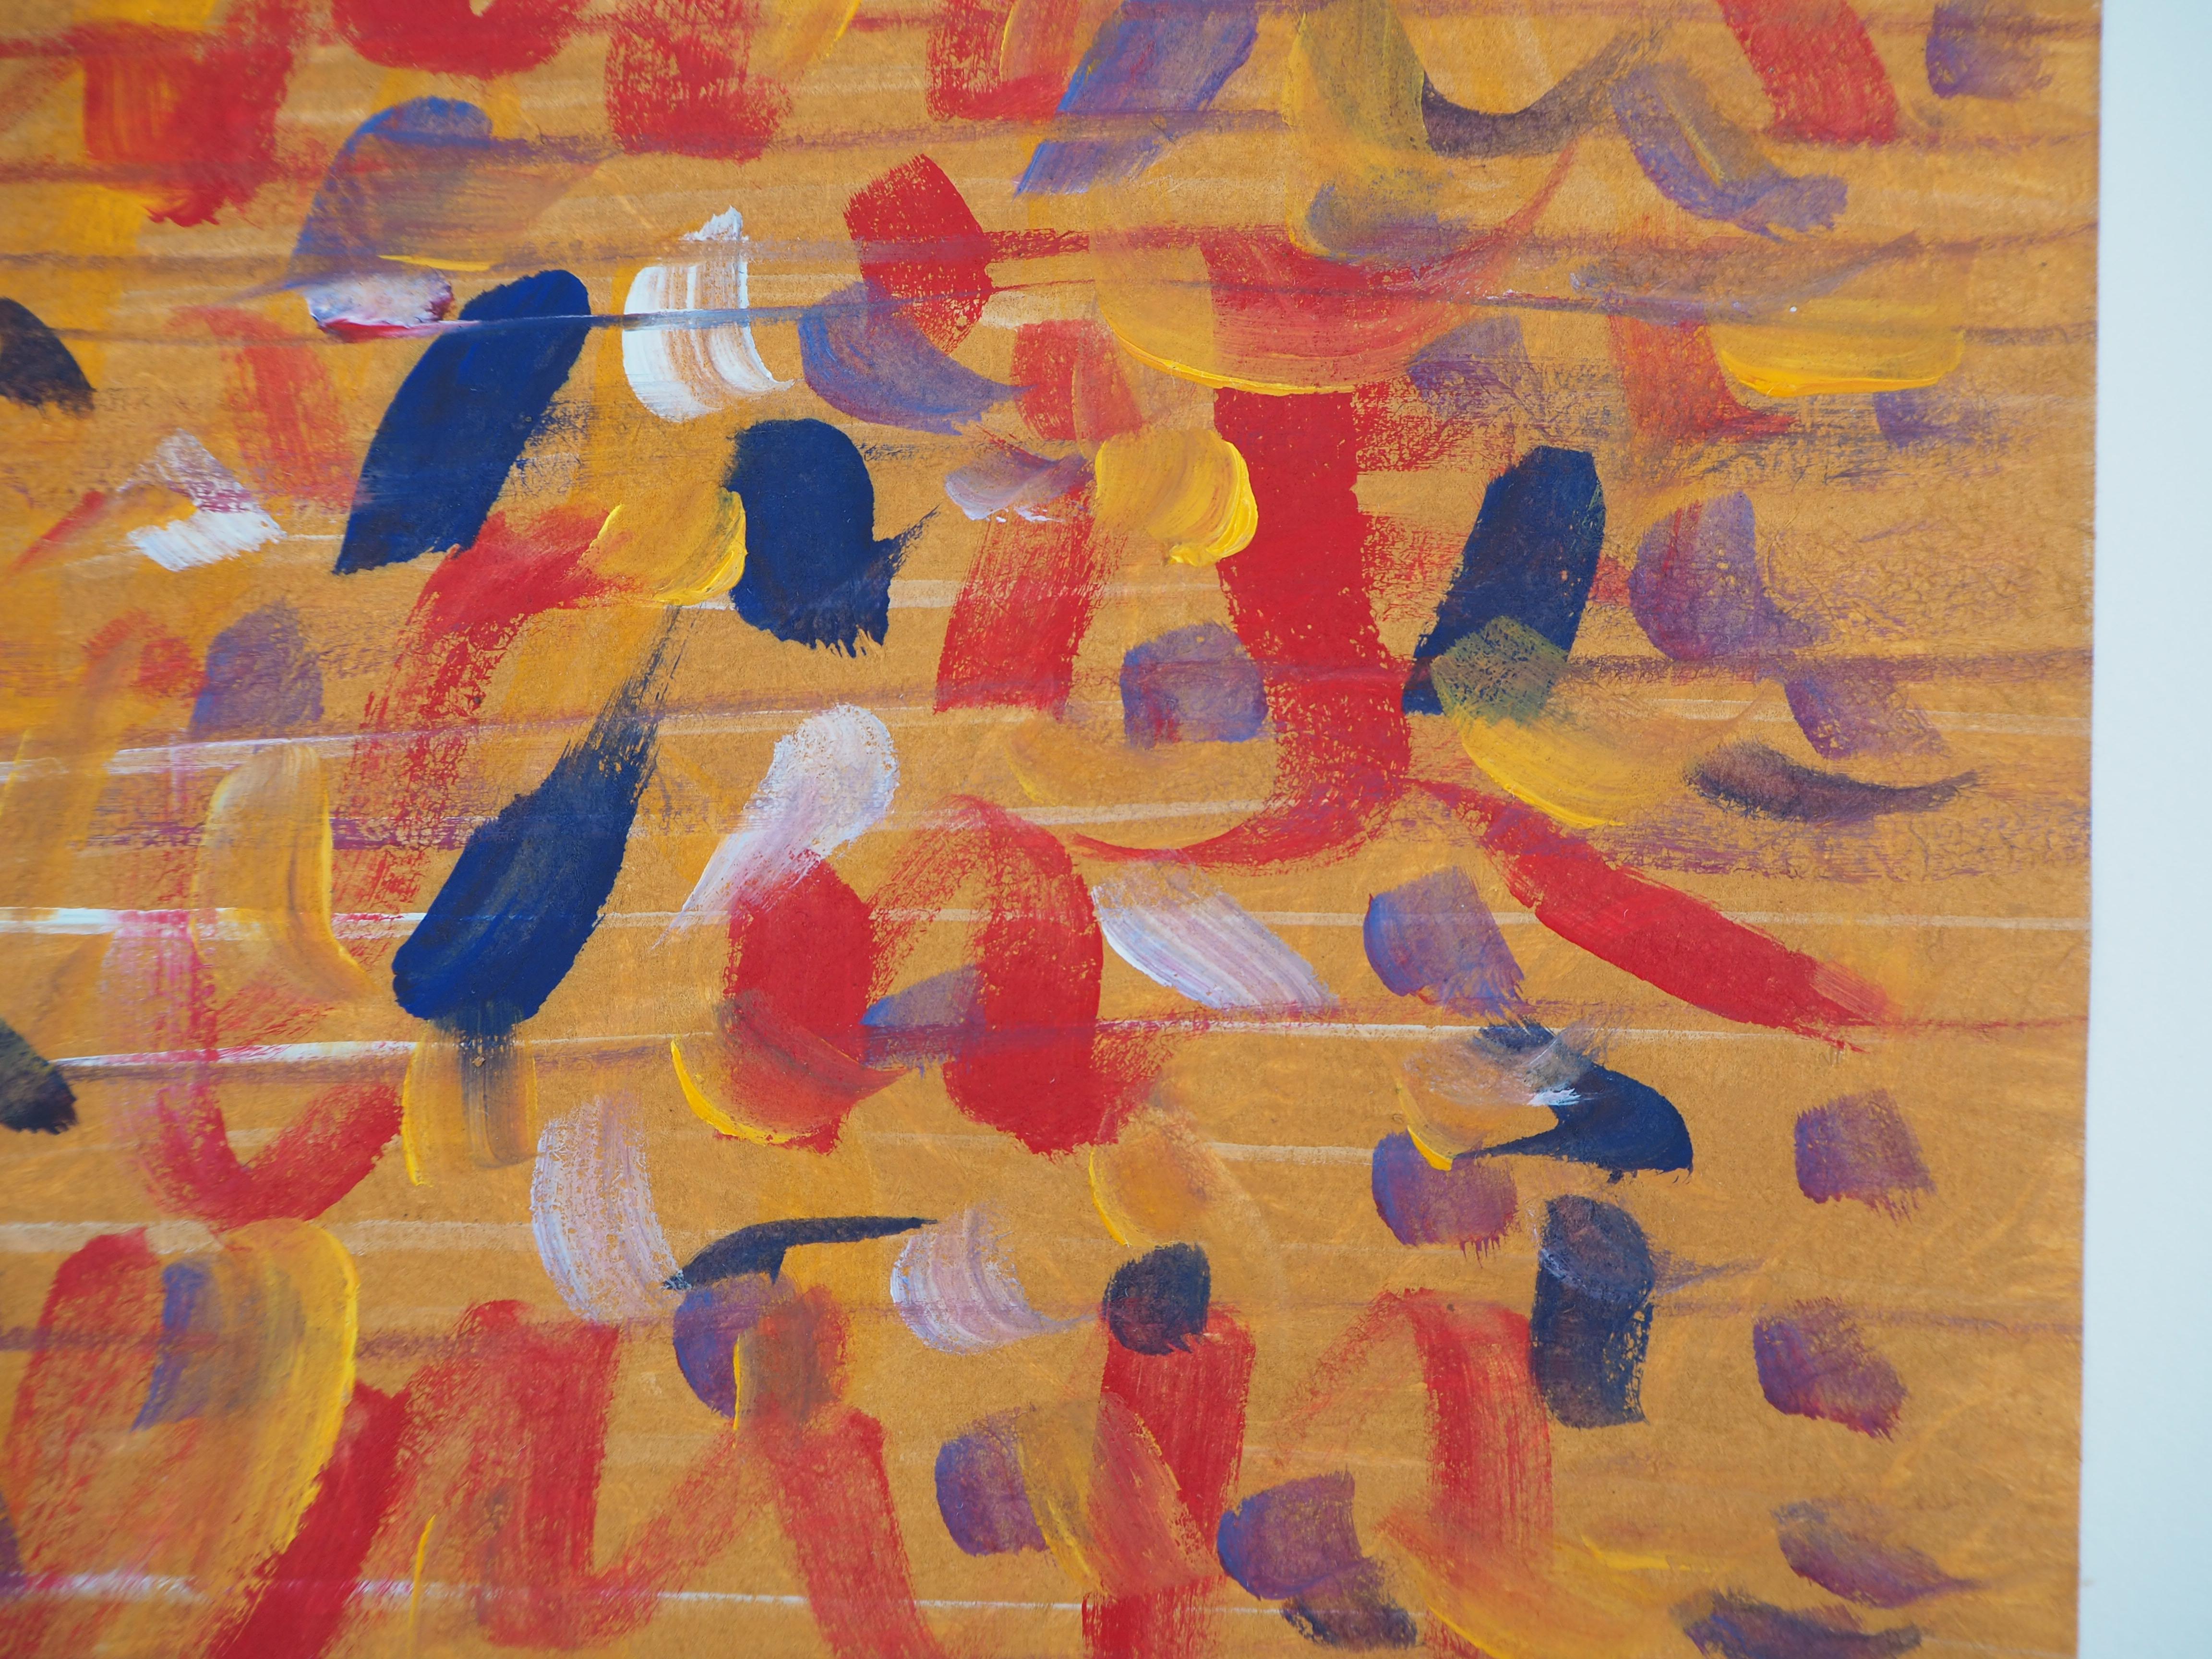 Ervin NEUHAUS
Composition bleu et rouge sur orange 

Aquarelle et tempera originales sur papier lourd
Signé en bas à droite
Authentifié avec le cachet de la vente aux enchères au dos
21 x 21 cm (environ 8 x 8 pouces)

Excellent état